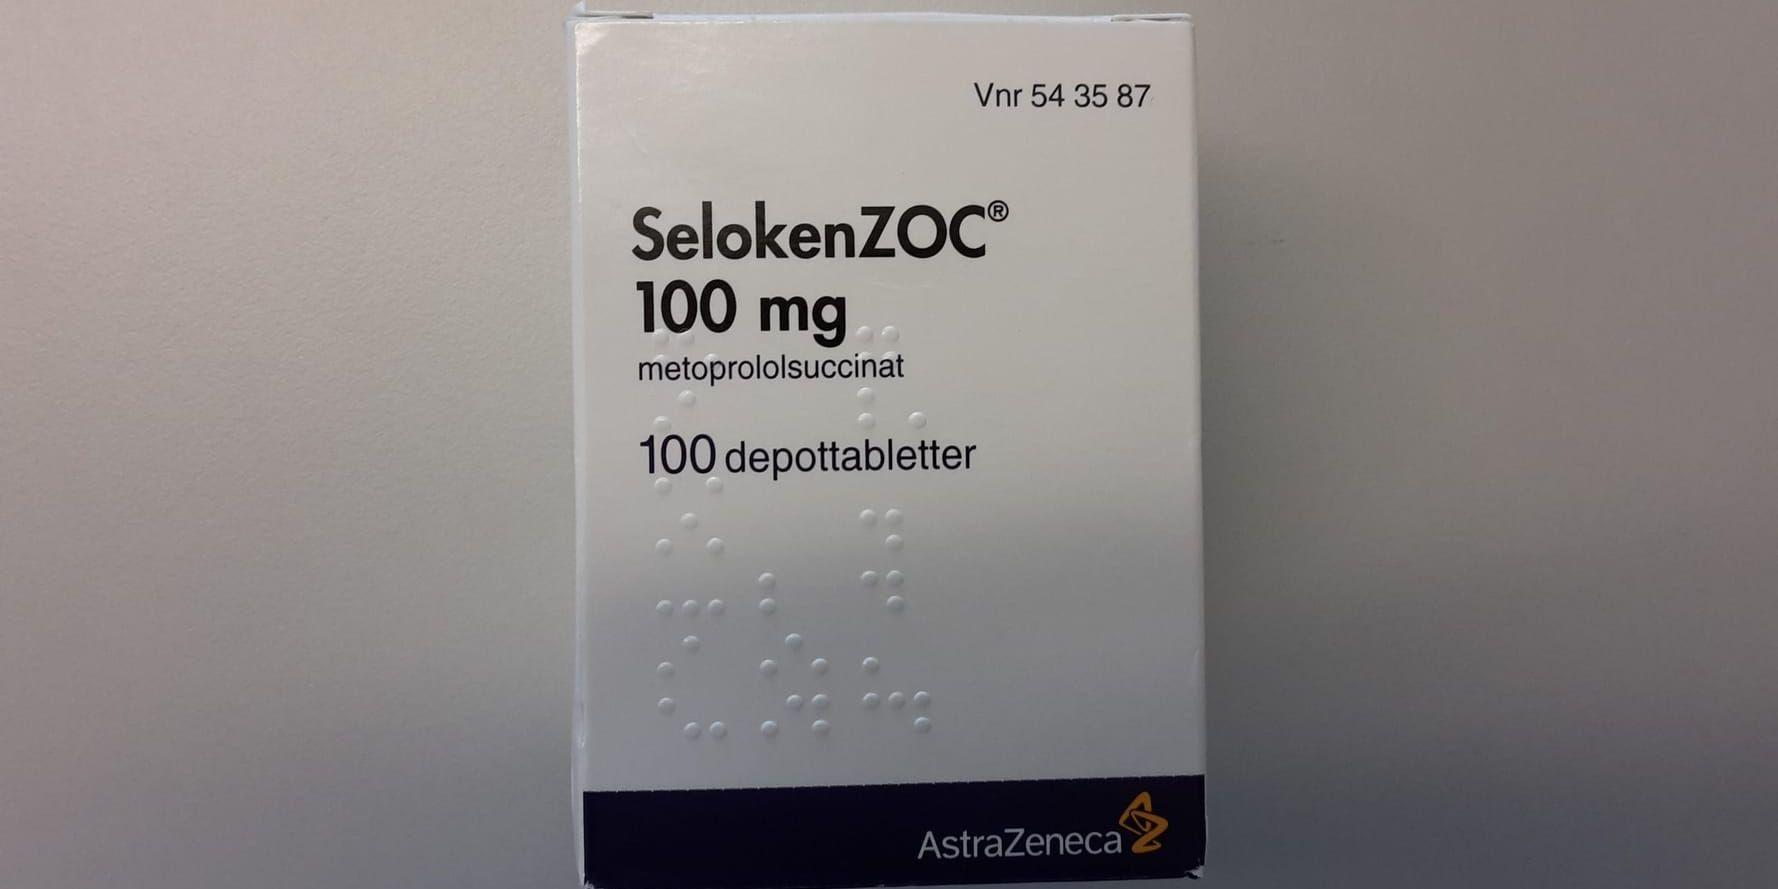 Varningen gäller förpackningar med blodtrycksmedicinen Seloken ZOC, som i stället kan innehålla ett kortisonpreparat.